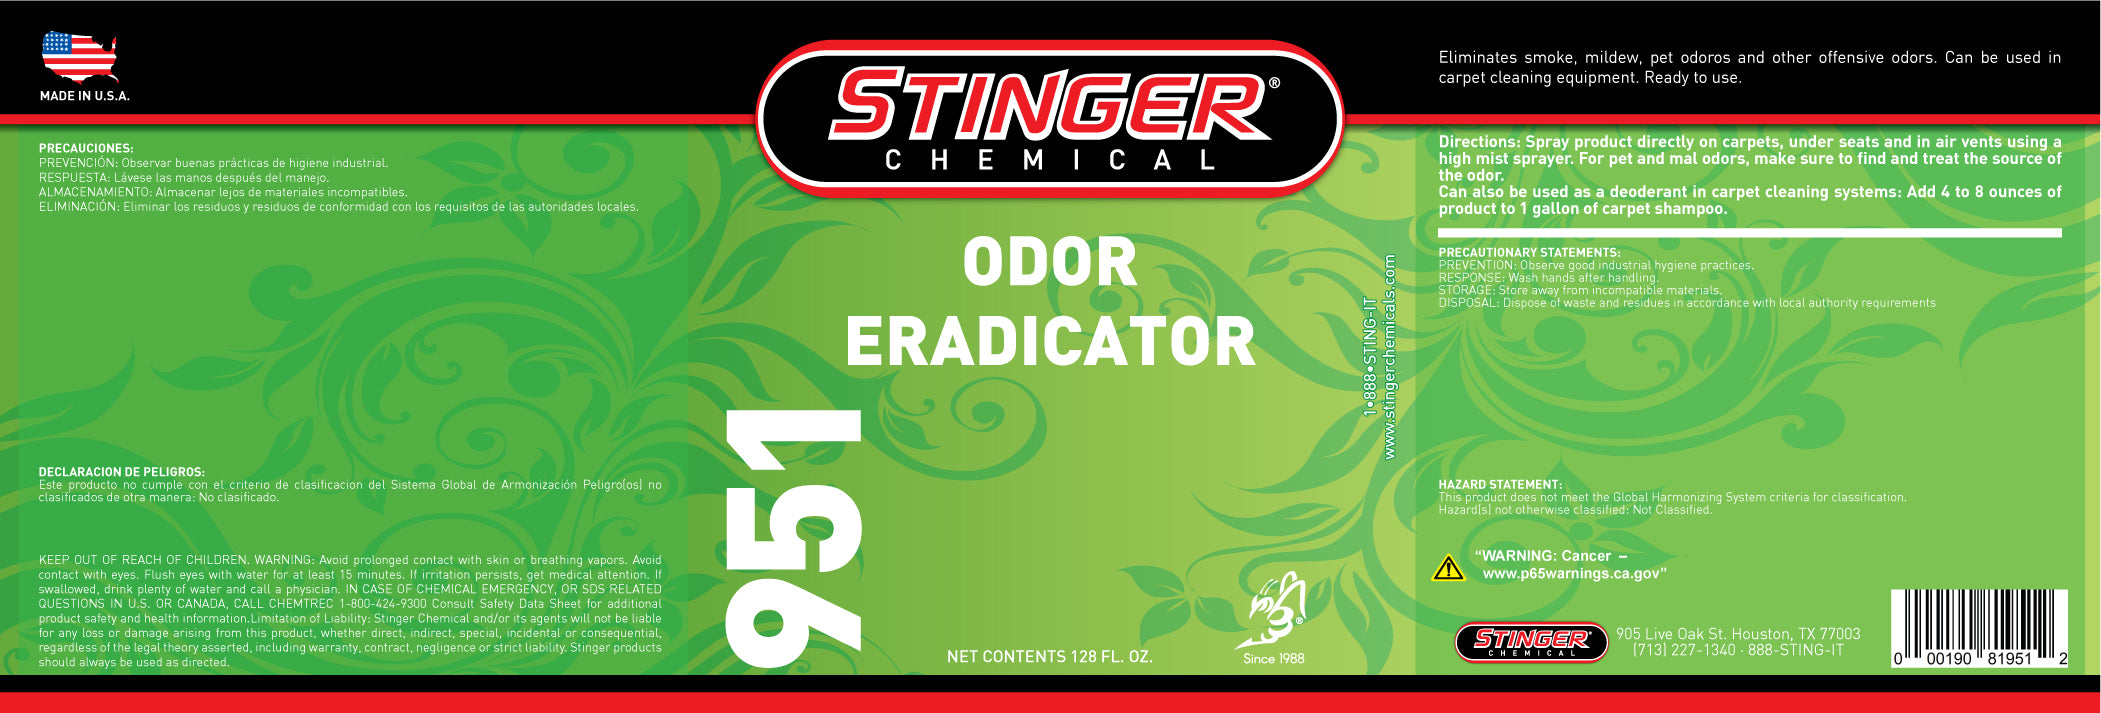 Stinger Chemical SDS Bottle Labels